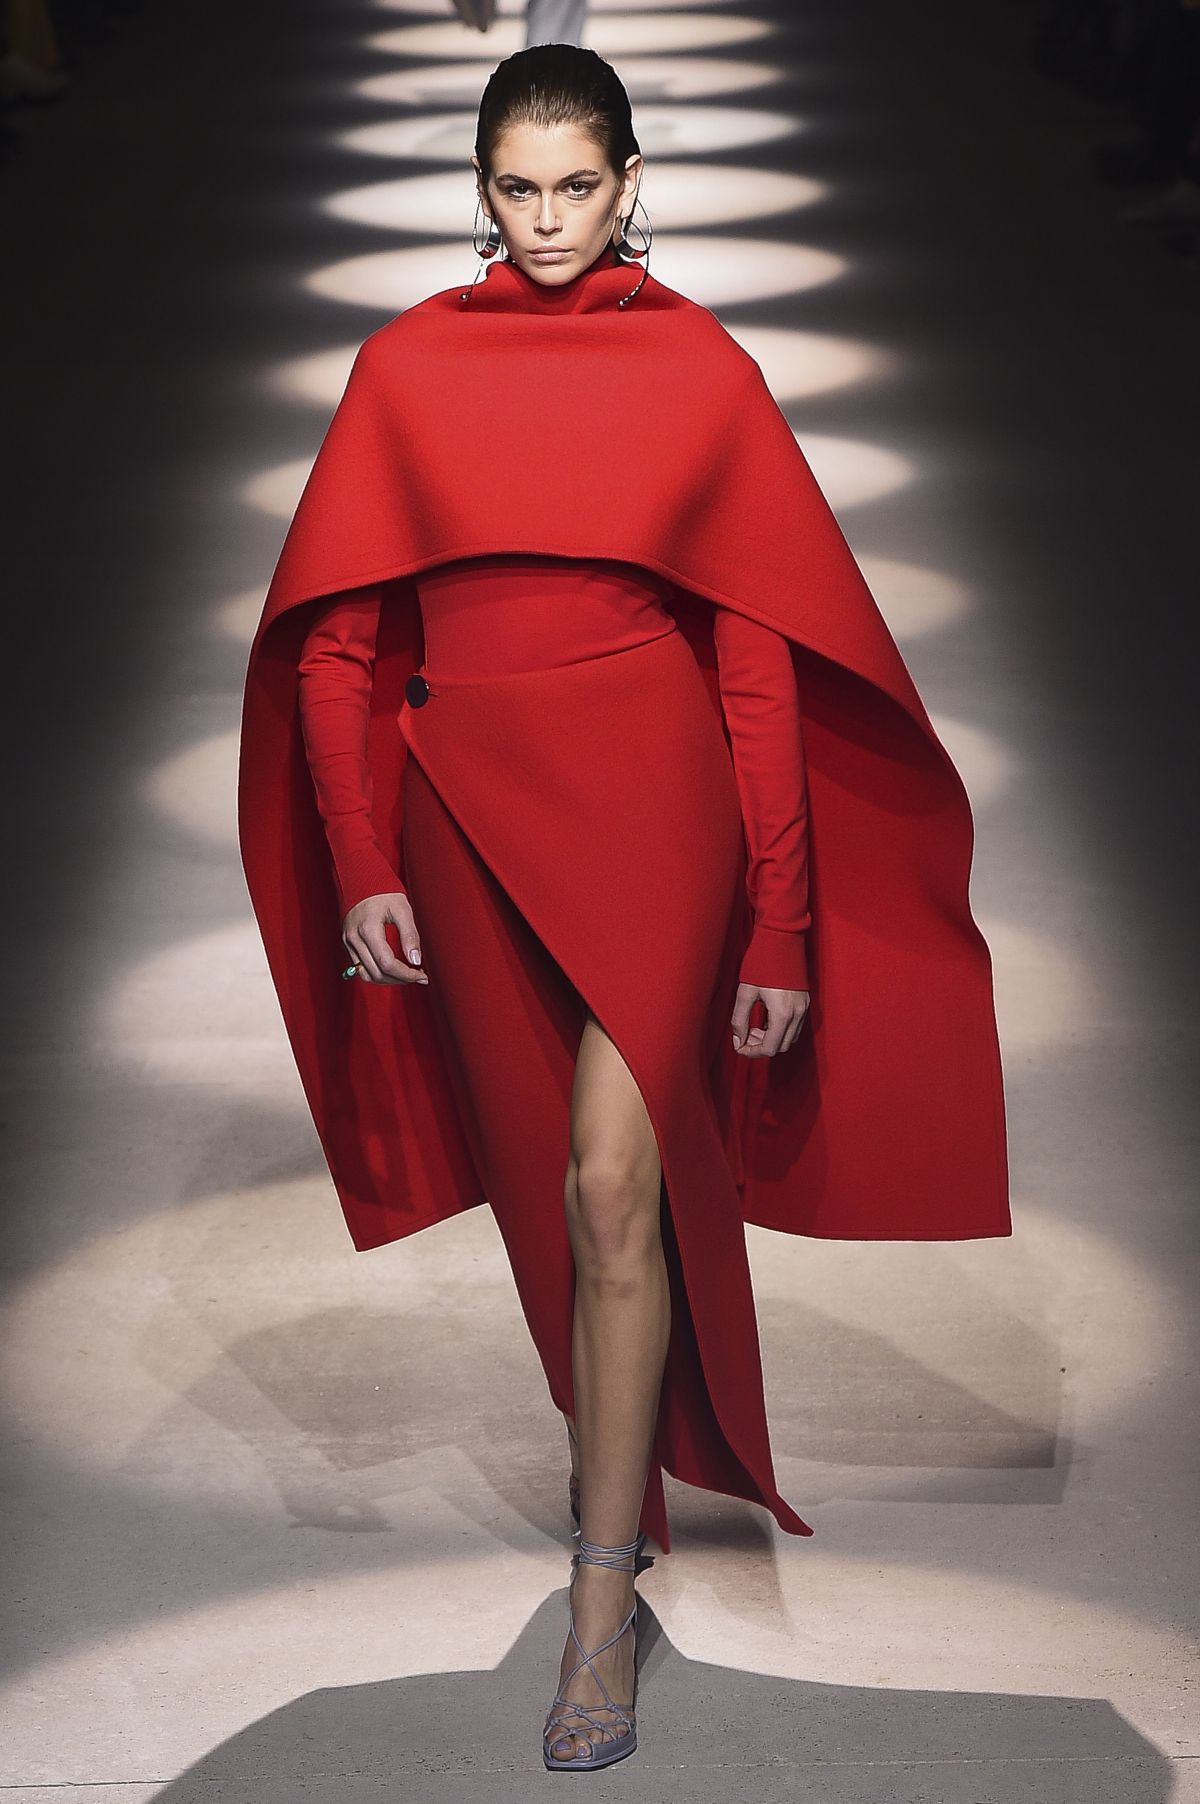 KAIA GERBER at Givenchy Runway Show at Paris Fashion Week 03/01/2020 ...